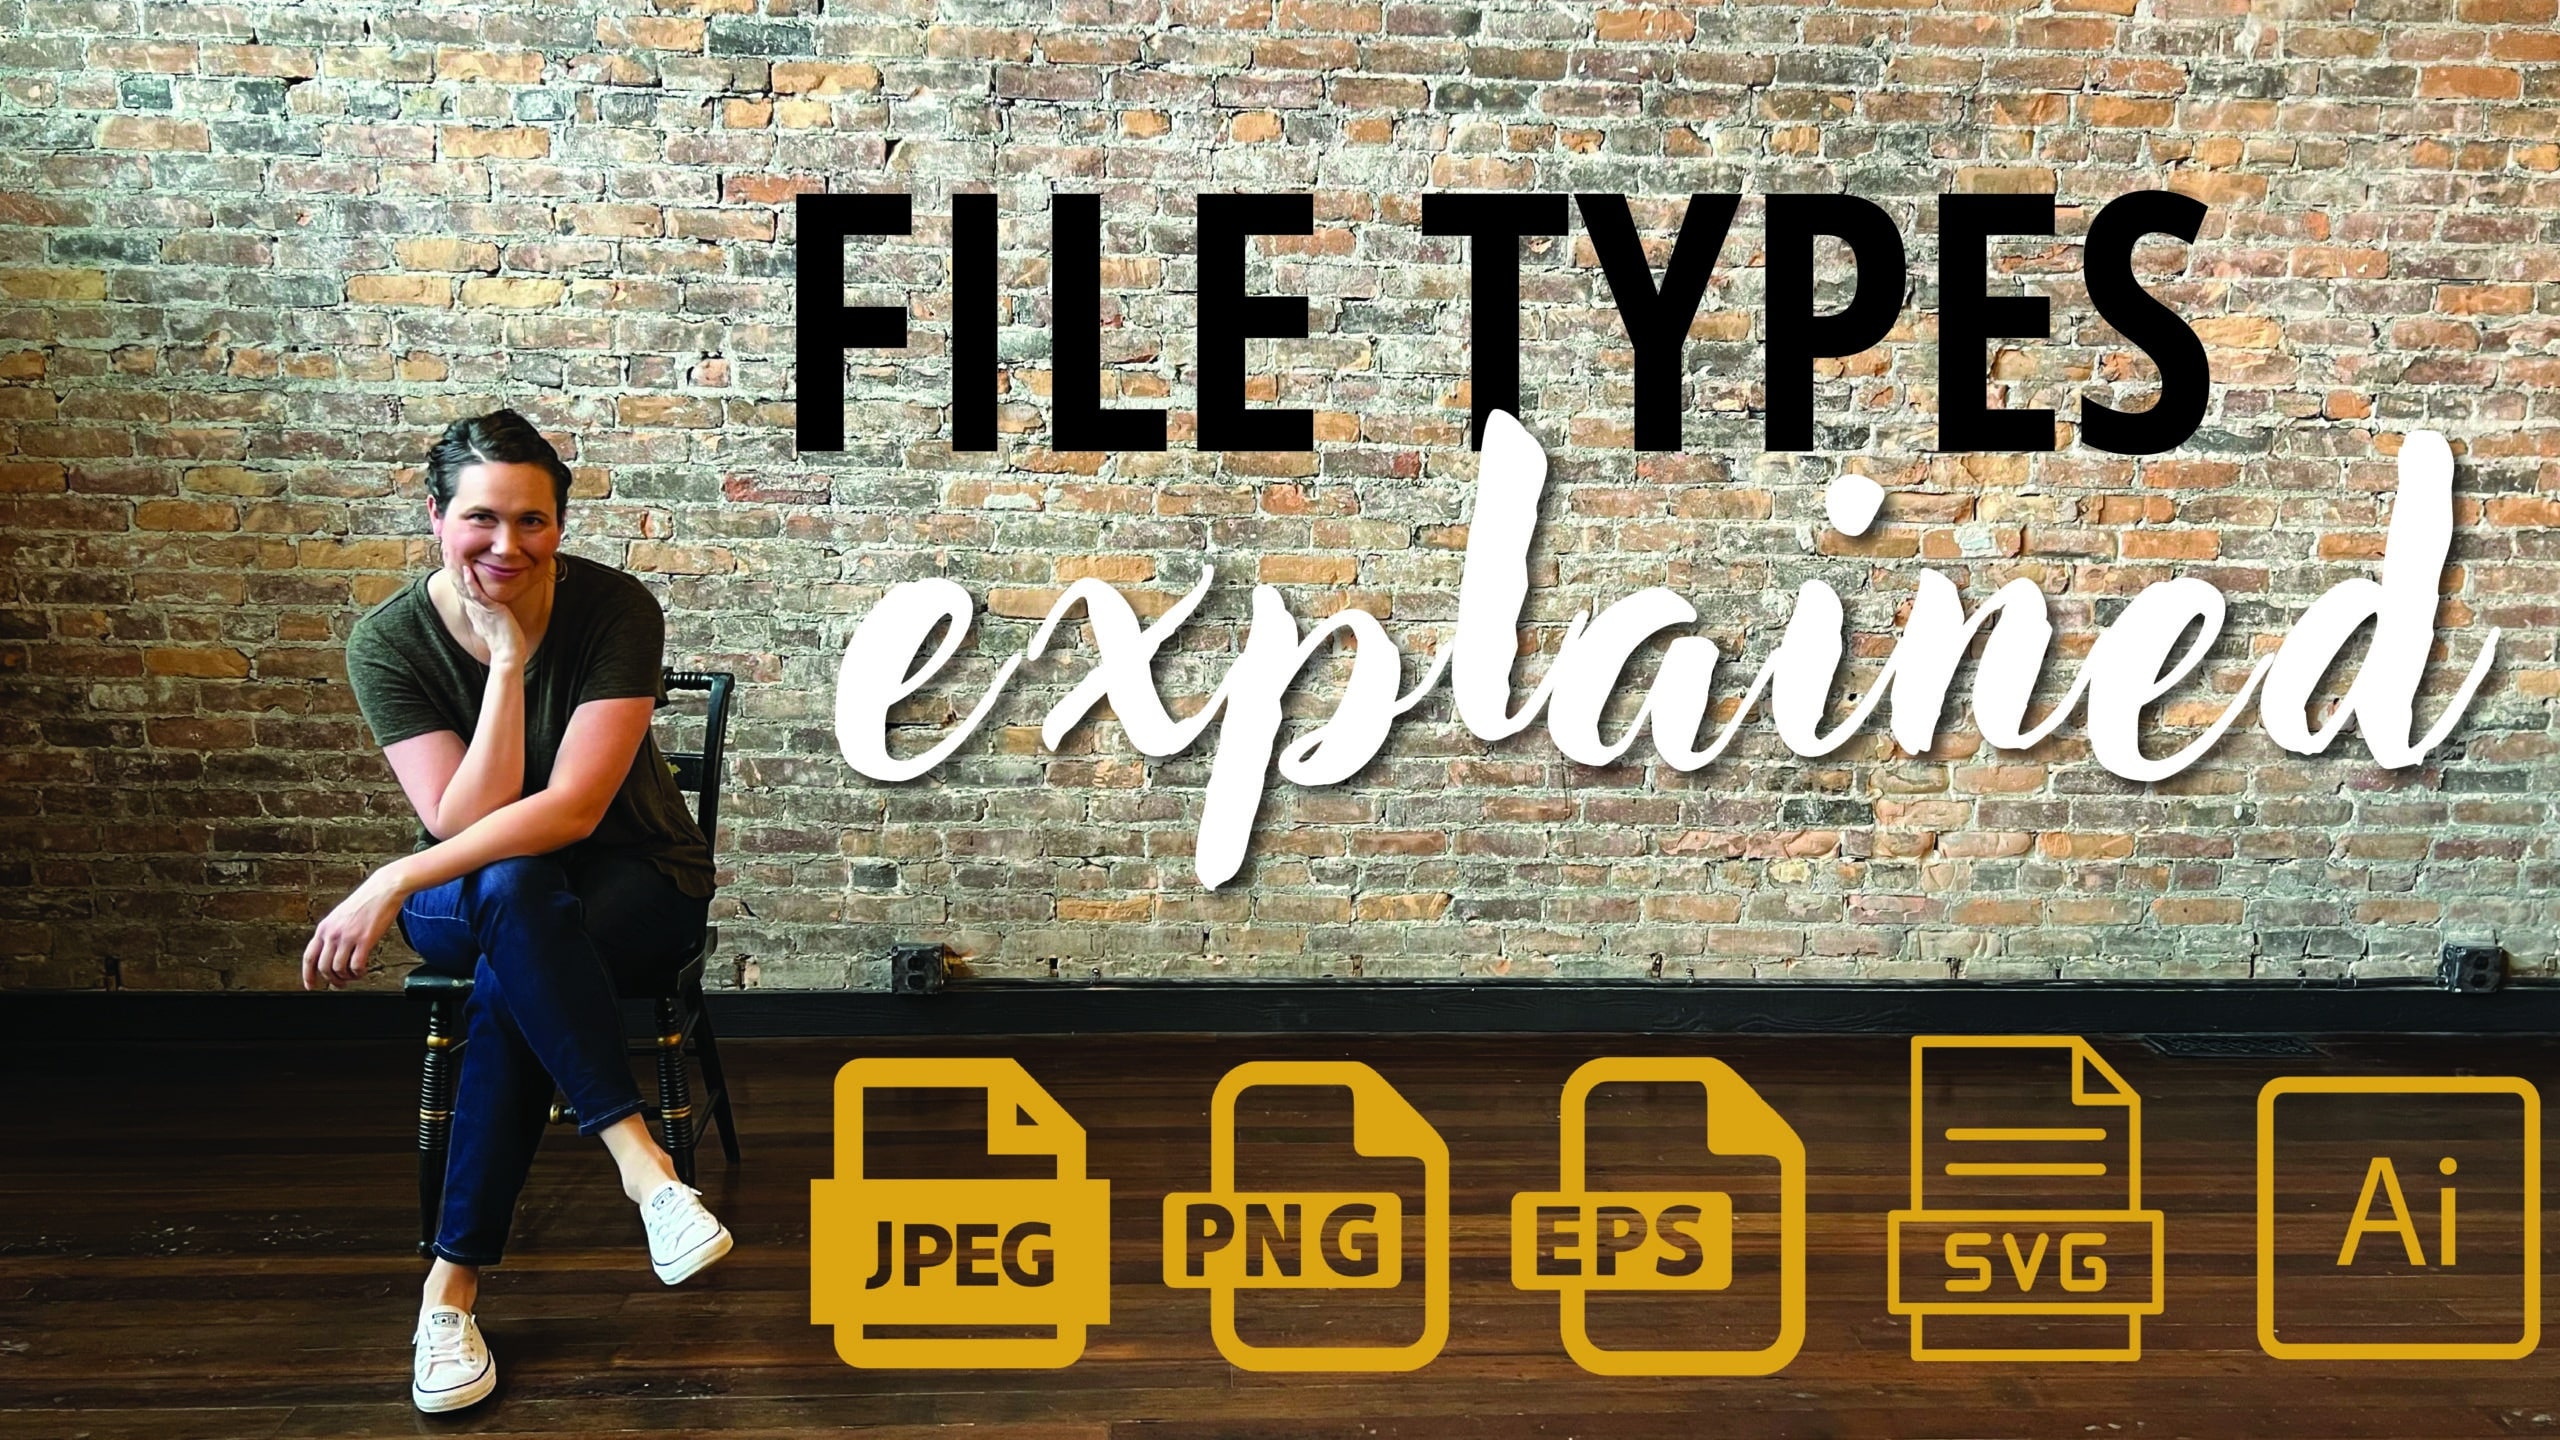 logo file types explained image